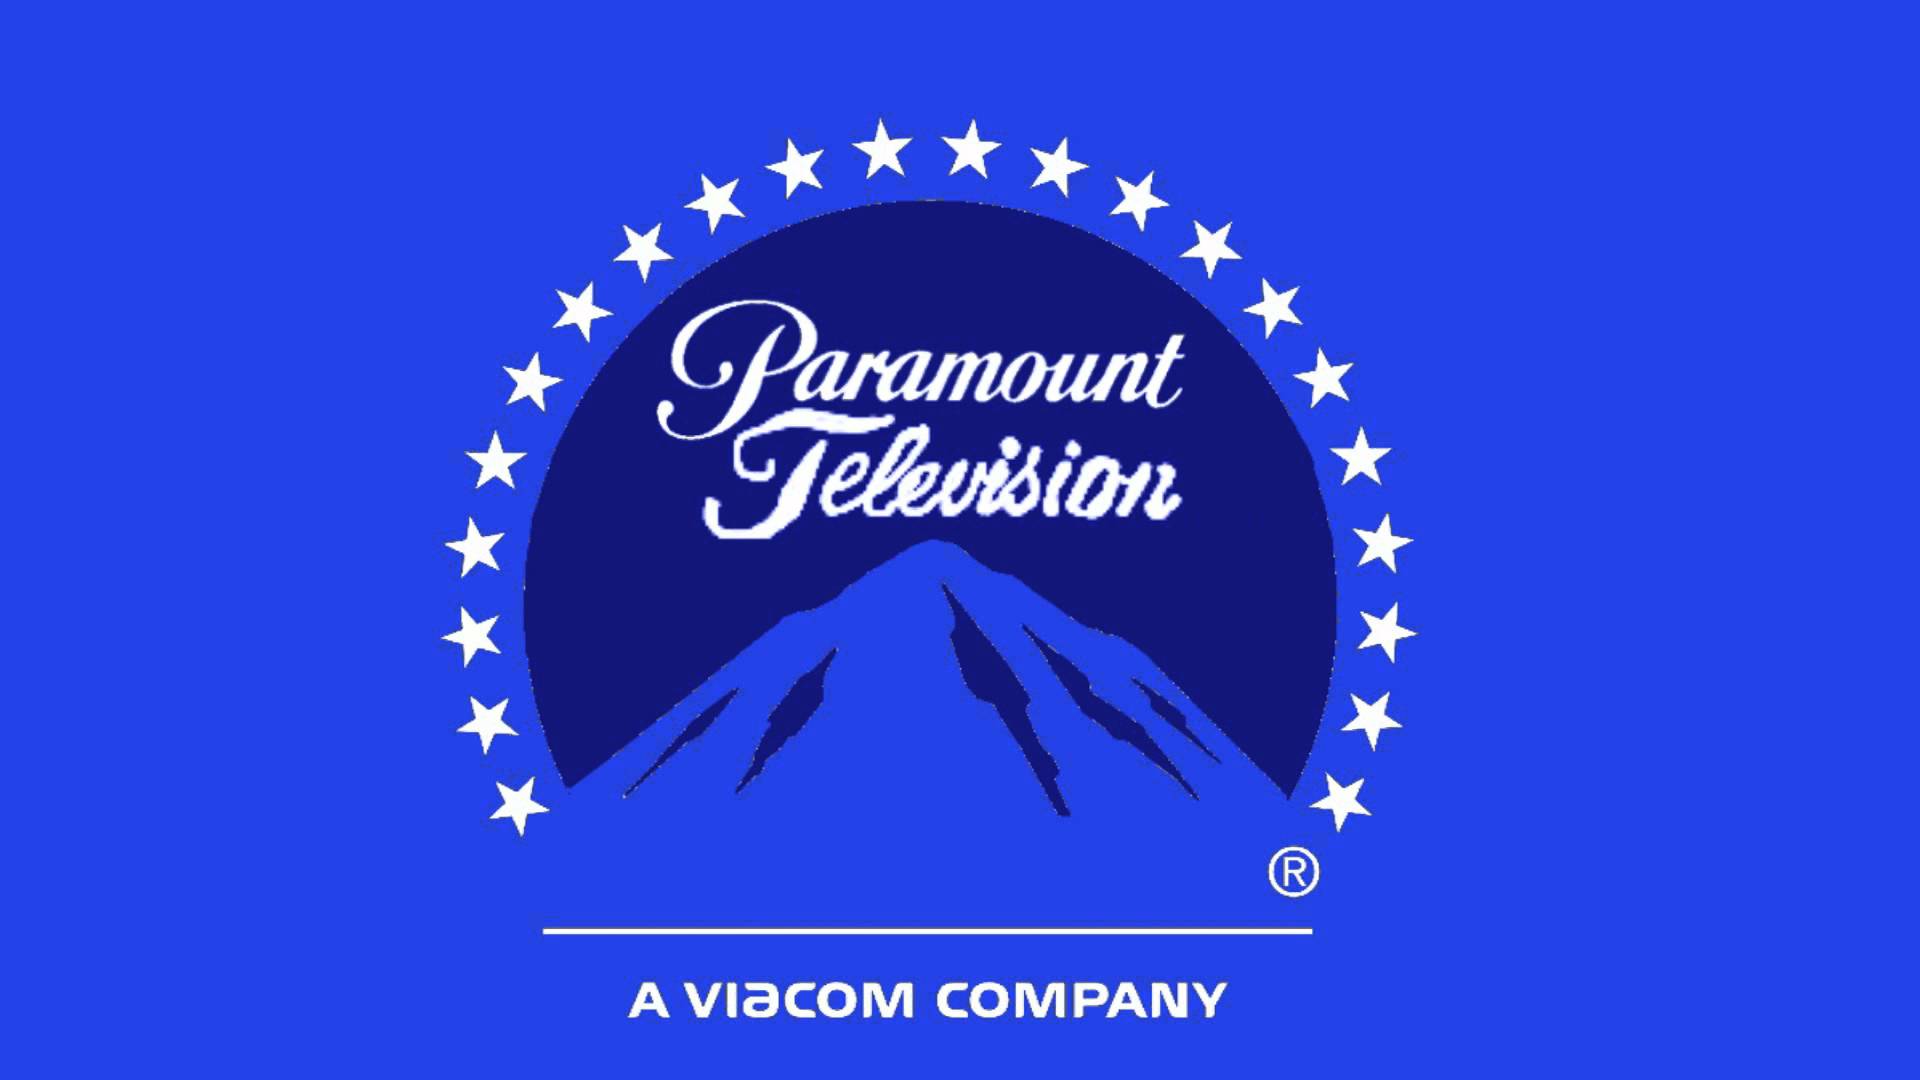 Paramount Company Logo - Image - 6 paramount.jpg | The Ickis & Oblina Show Wikia | FANDOM ...